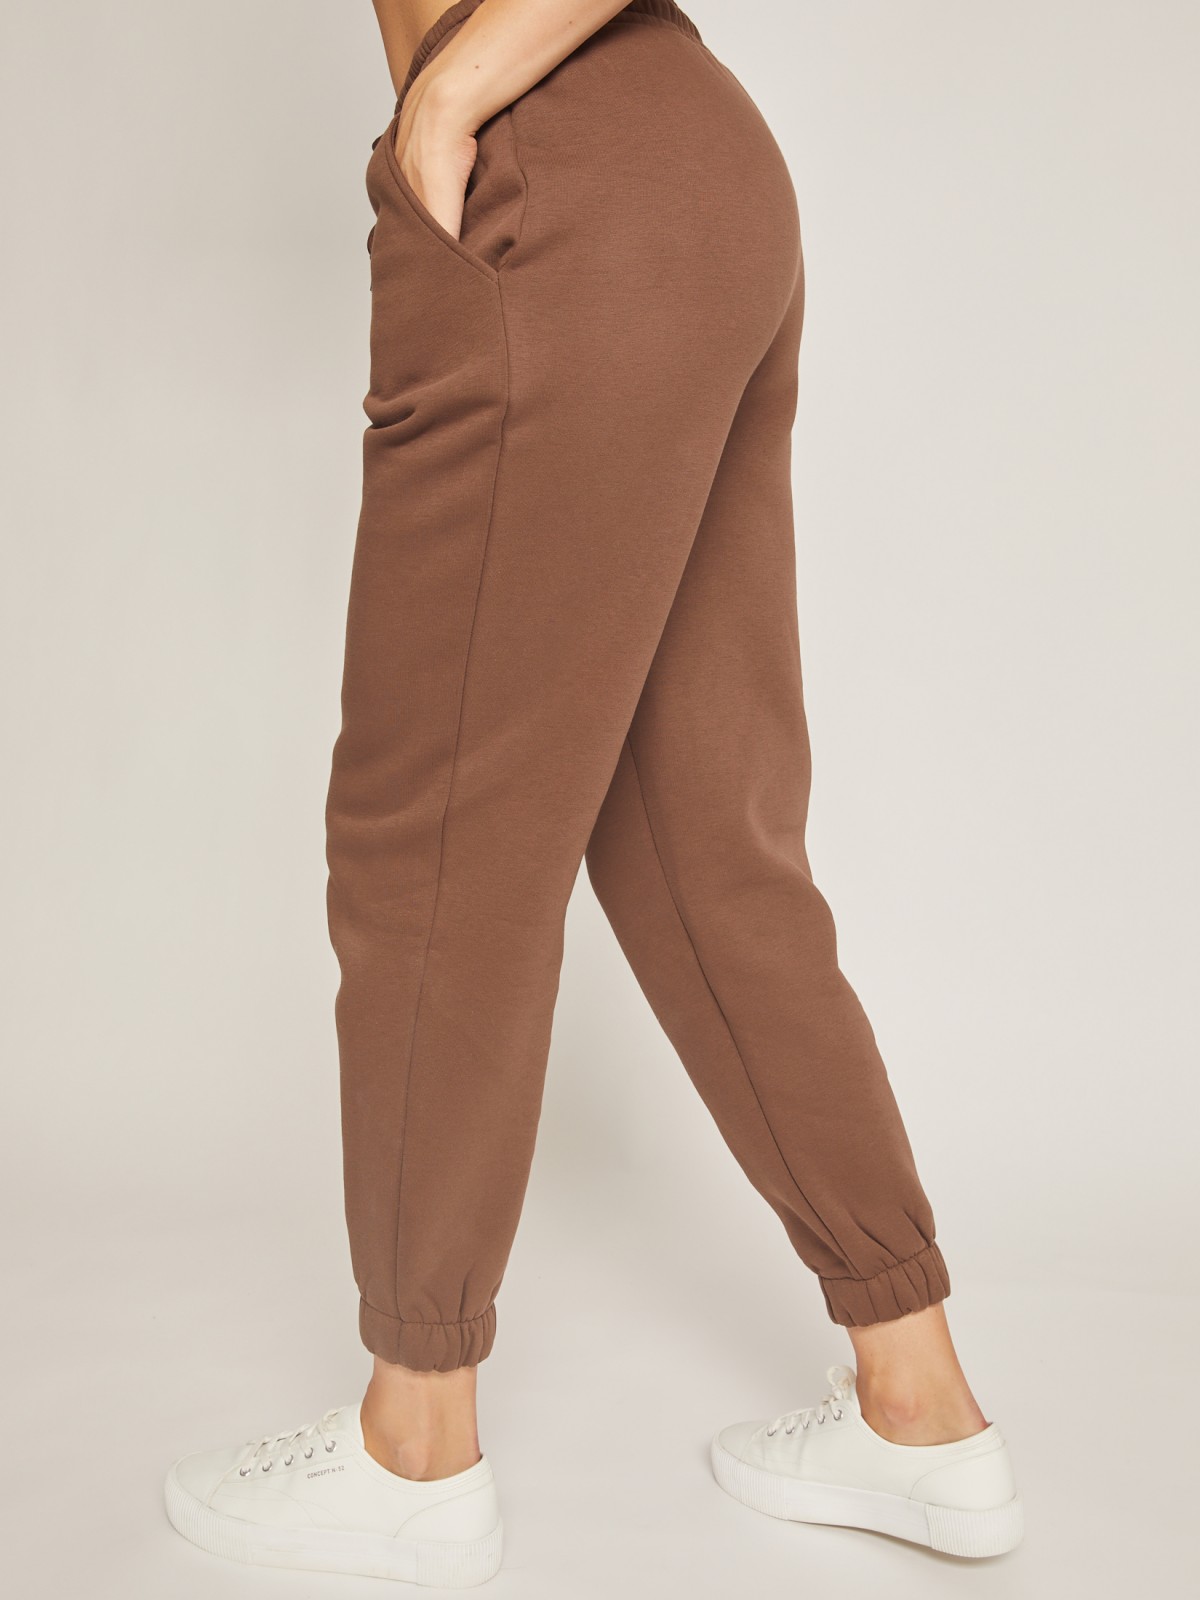 Утеплённые брюки-джоггеры zolla 02142731Y091, цвет коричневый, размер XS - фото 6